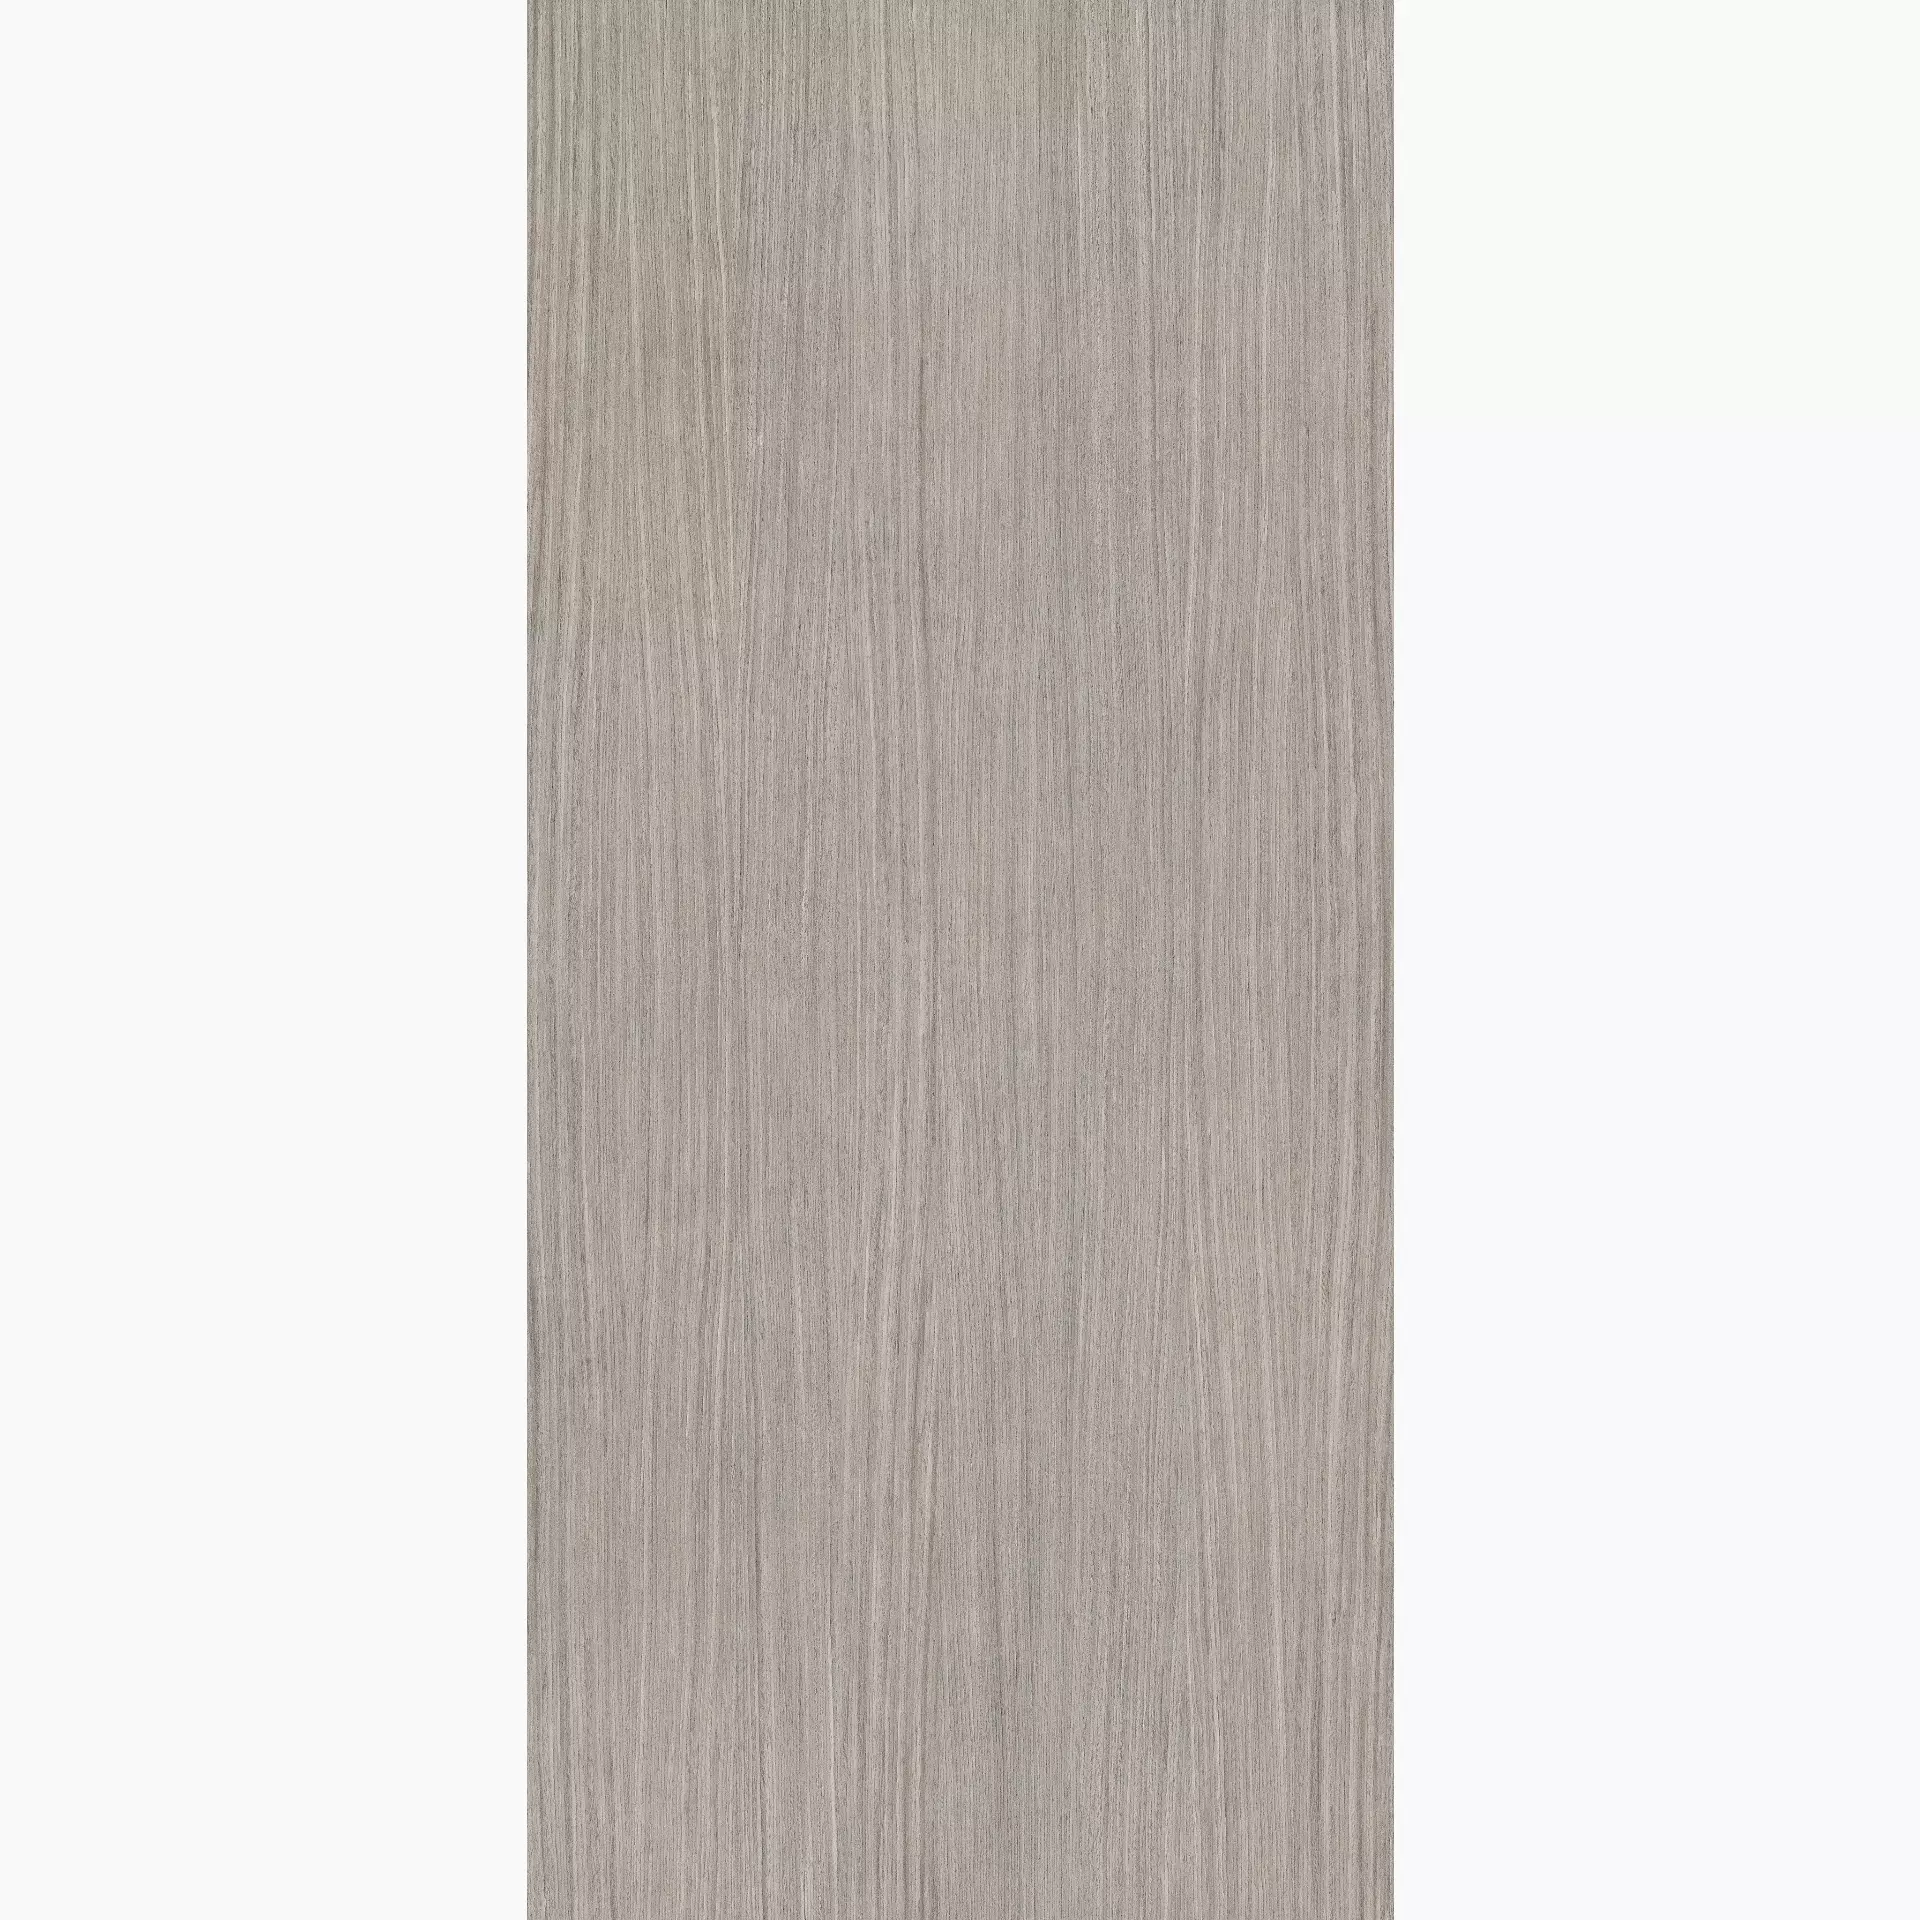 Florim Nature Mood Plank 05 Comfort Plank 05 774715 matt rutschhemmend 120x280cm rektifiziert 6mm